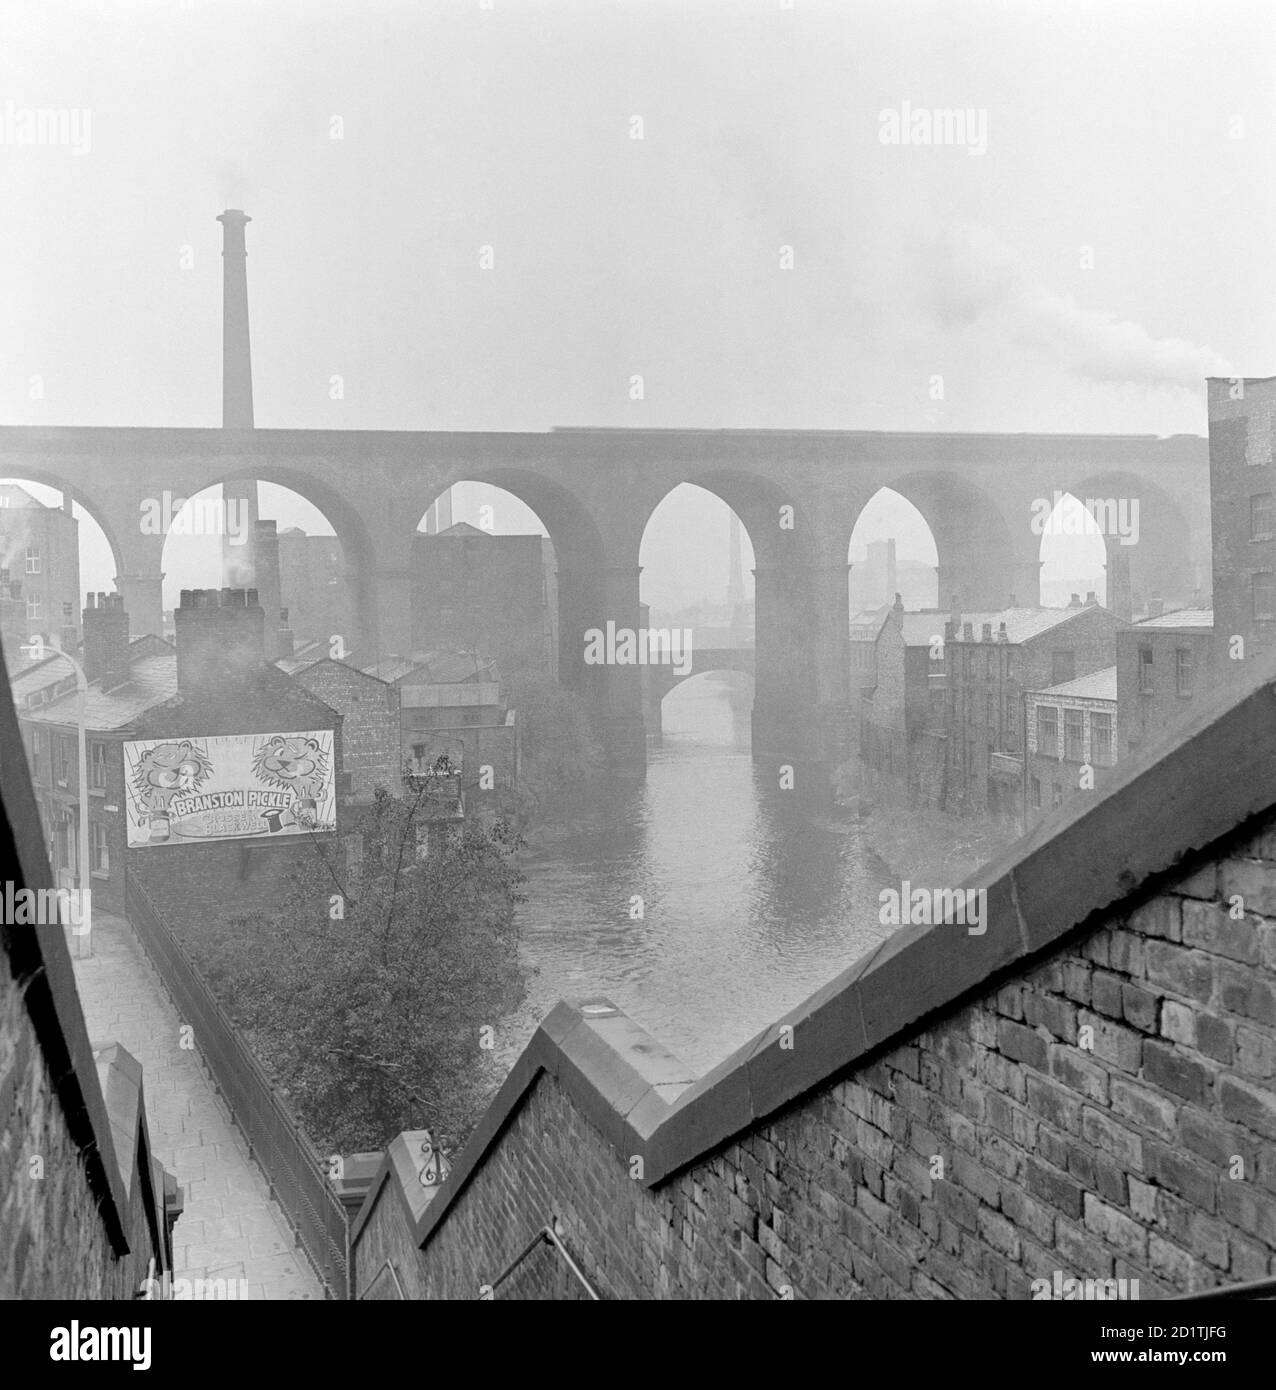 EISENBAHNVIADUKT, Stockport, Greater Manchester. Diese stimmungsvolle Stadtlandschaft zeigt den Eisenbahnviadukt in Stockport, der am Fluss entlang blickt. Fotografiert von Eric de Mare im Jahr 1954. Stockfoto